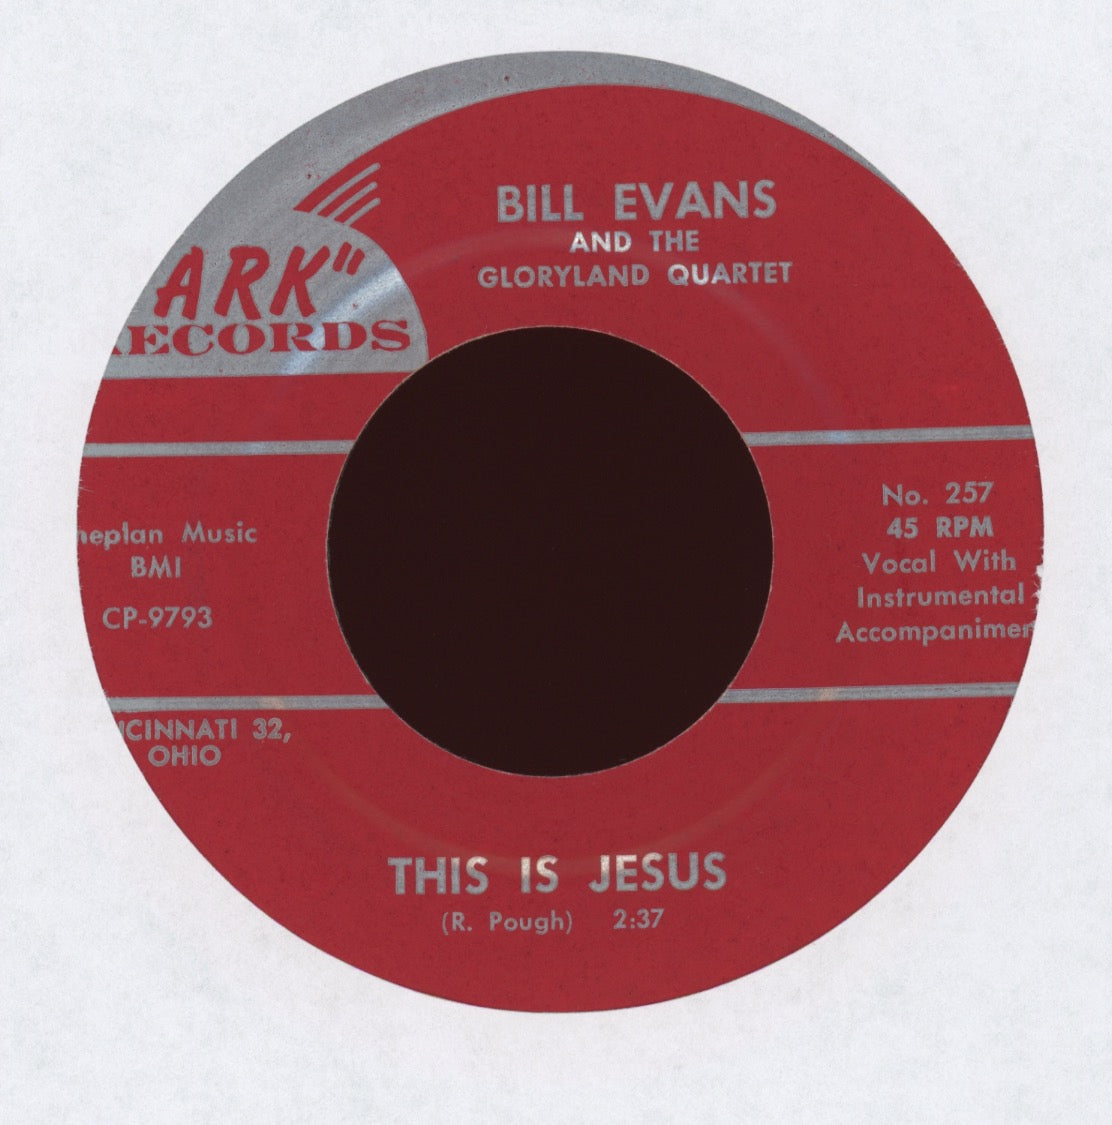 Bill Evans - This Is Jesus on Ark